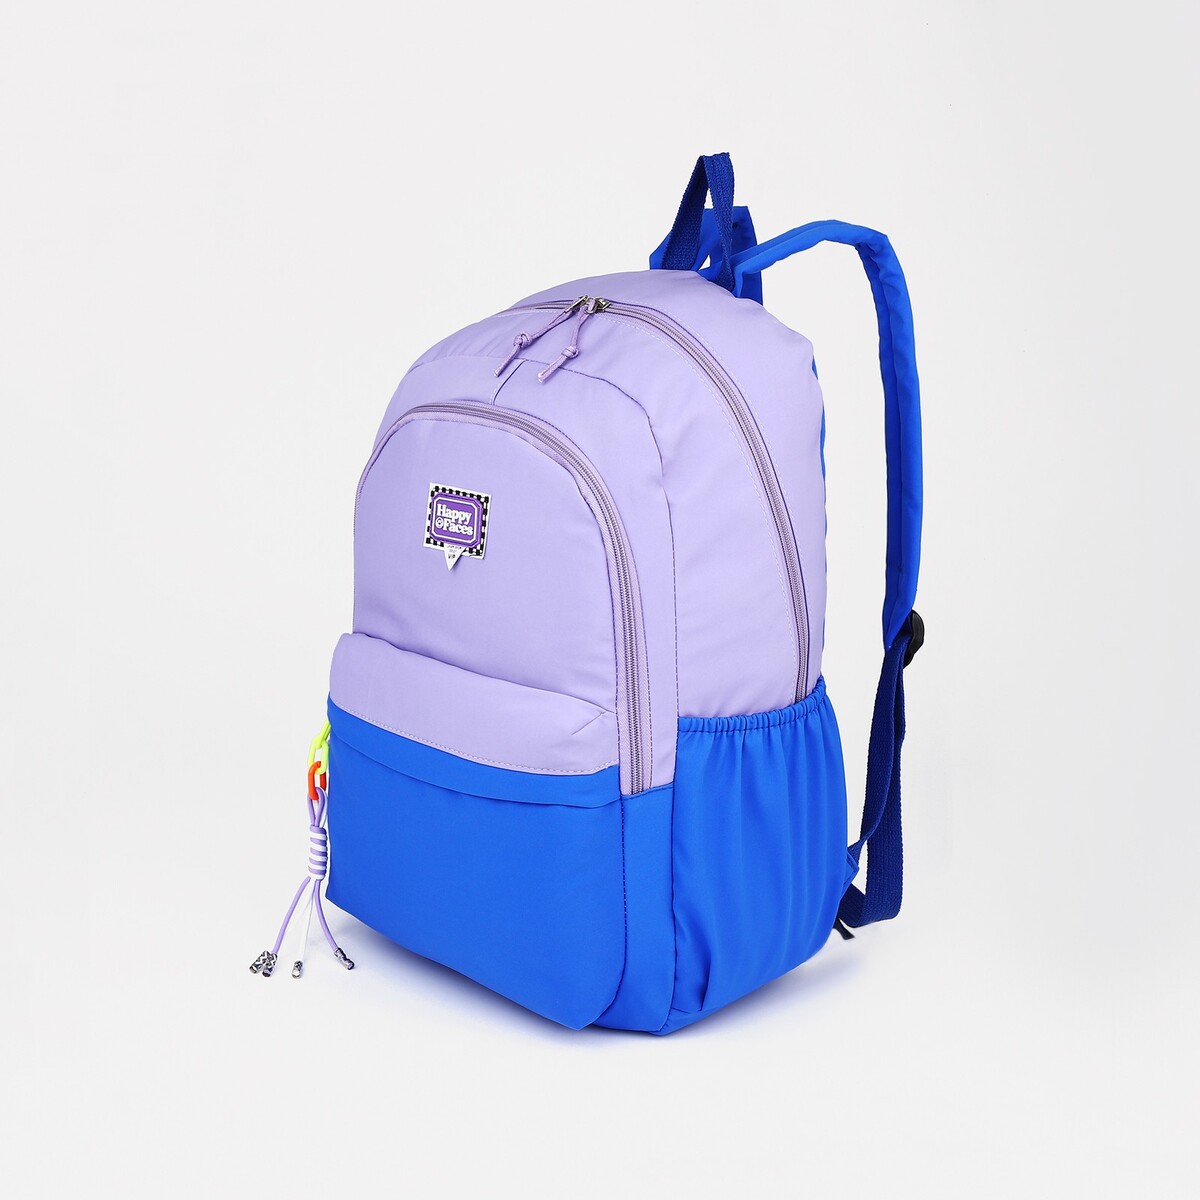 Рюкзак на молнии, 4 наружных кармана, цвет сиреневый/синий рюкзак текстильный face line 25х13х37 см сиреневый